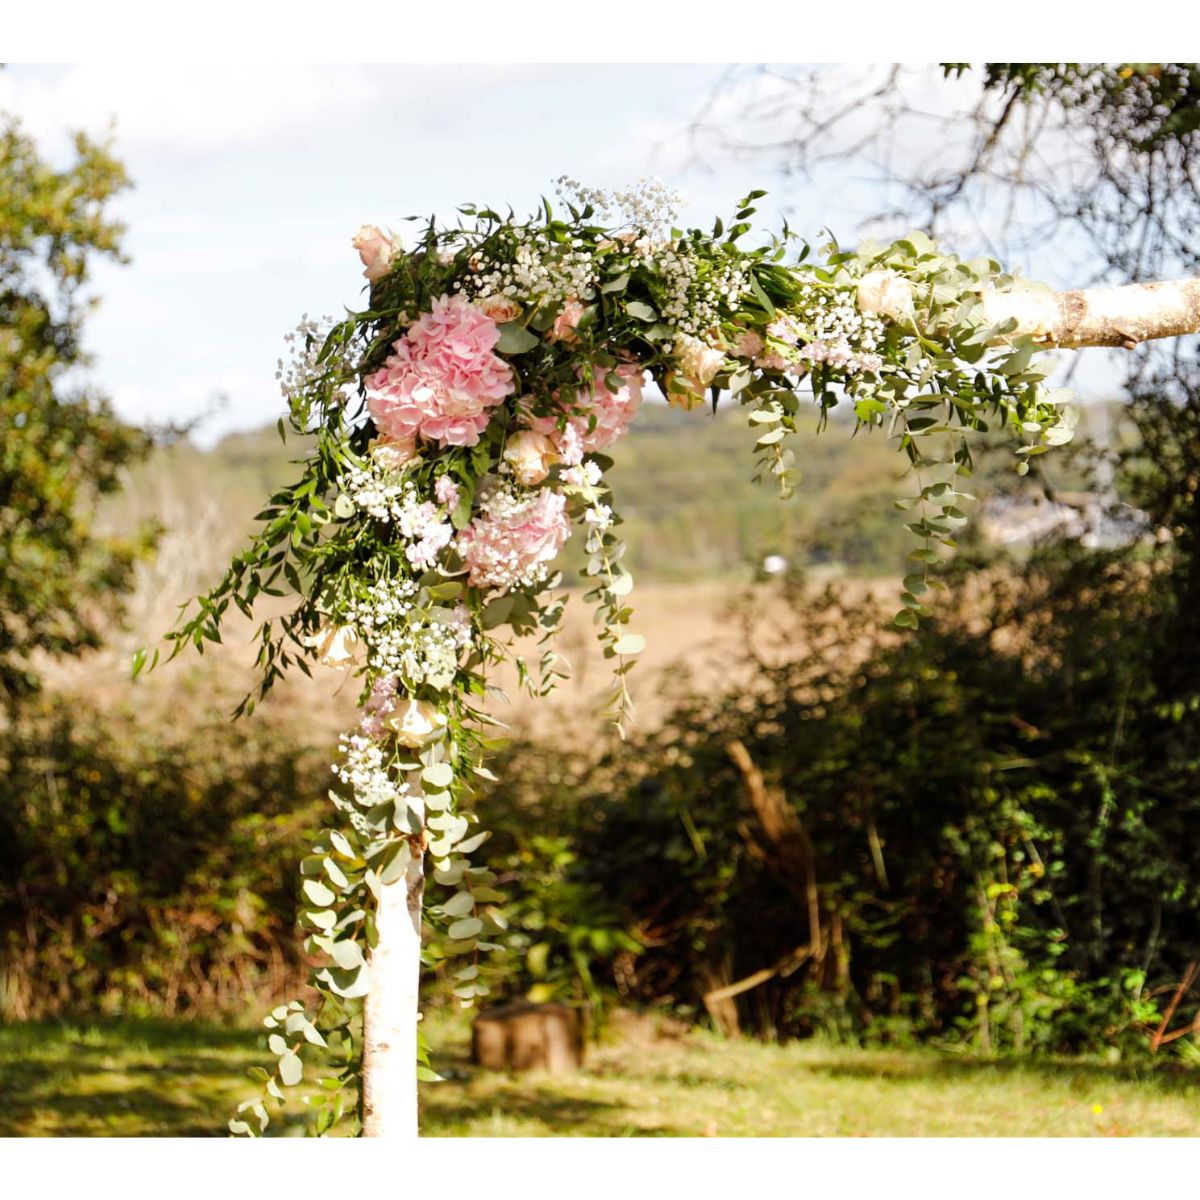 DIY : comment réaliser une arche fleurie pour mon mariage ? - Atelier Rose  Pivoine